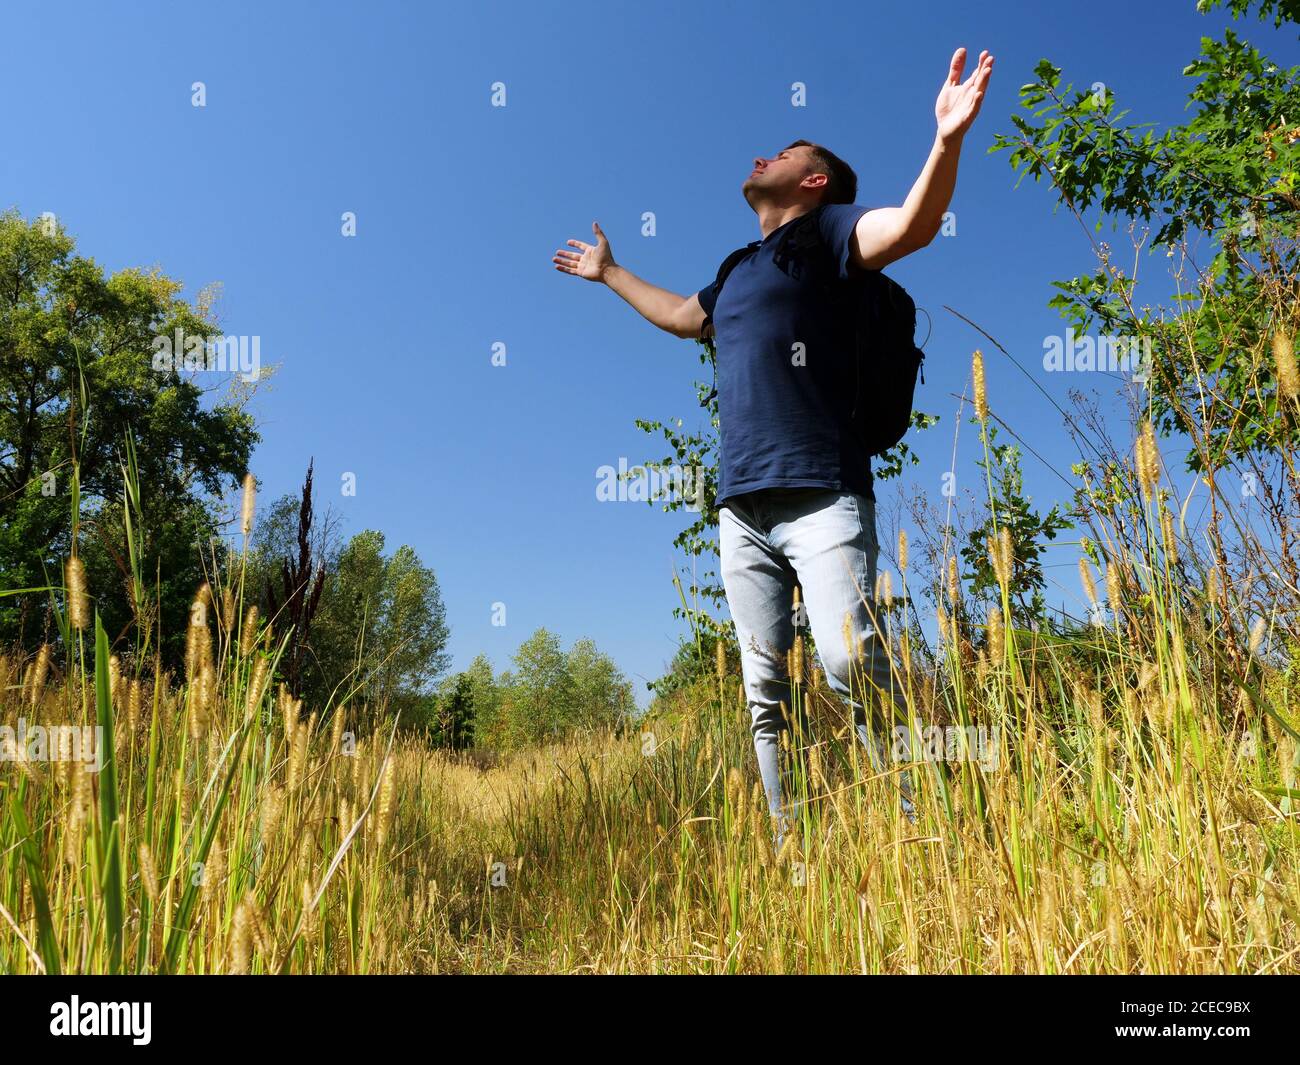 Ein Wanderer mit Rucksack streckt seine Hände zum Sommerhimmel in der Natur aus. Aktive Erholung und Entspannung. Stockfoto